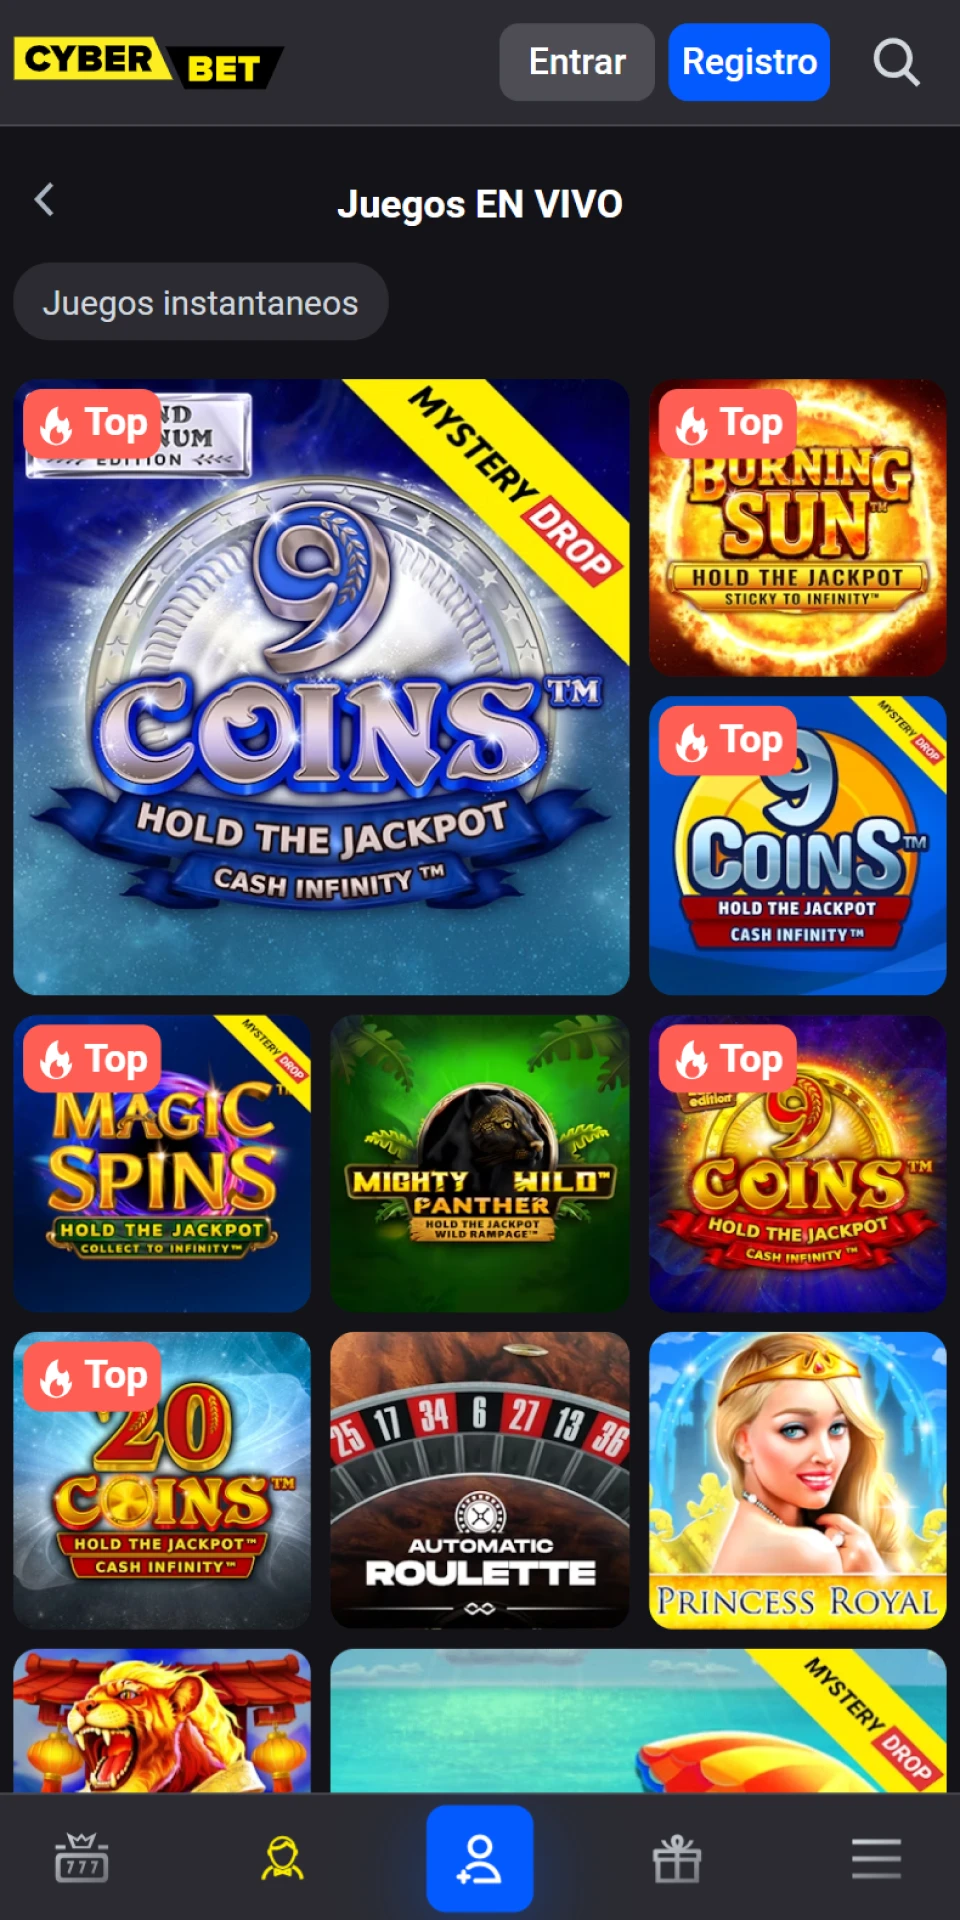 Visite la sección de casino en vivo en la app Cyber Bet.